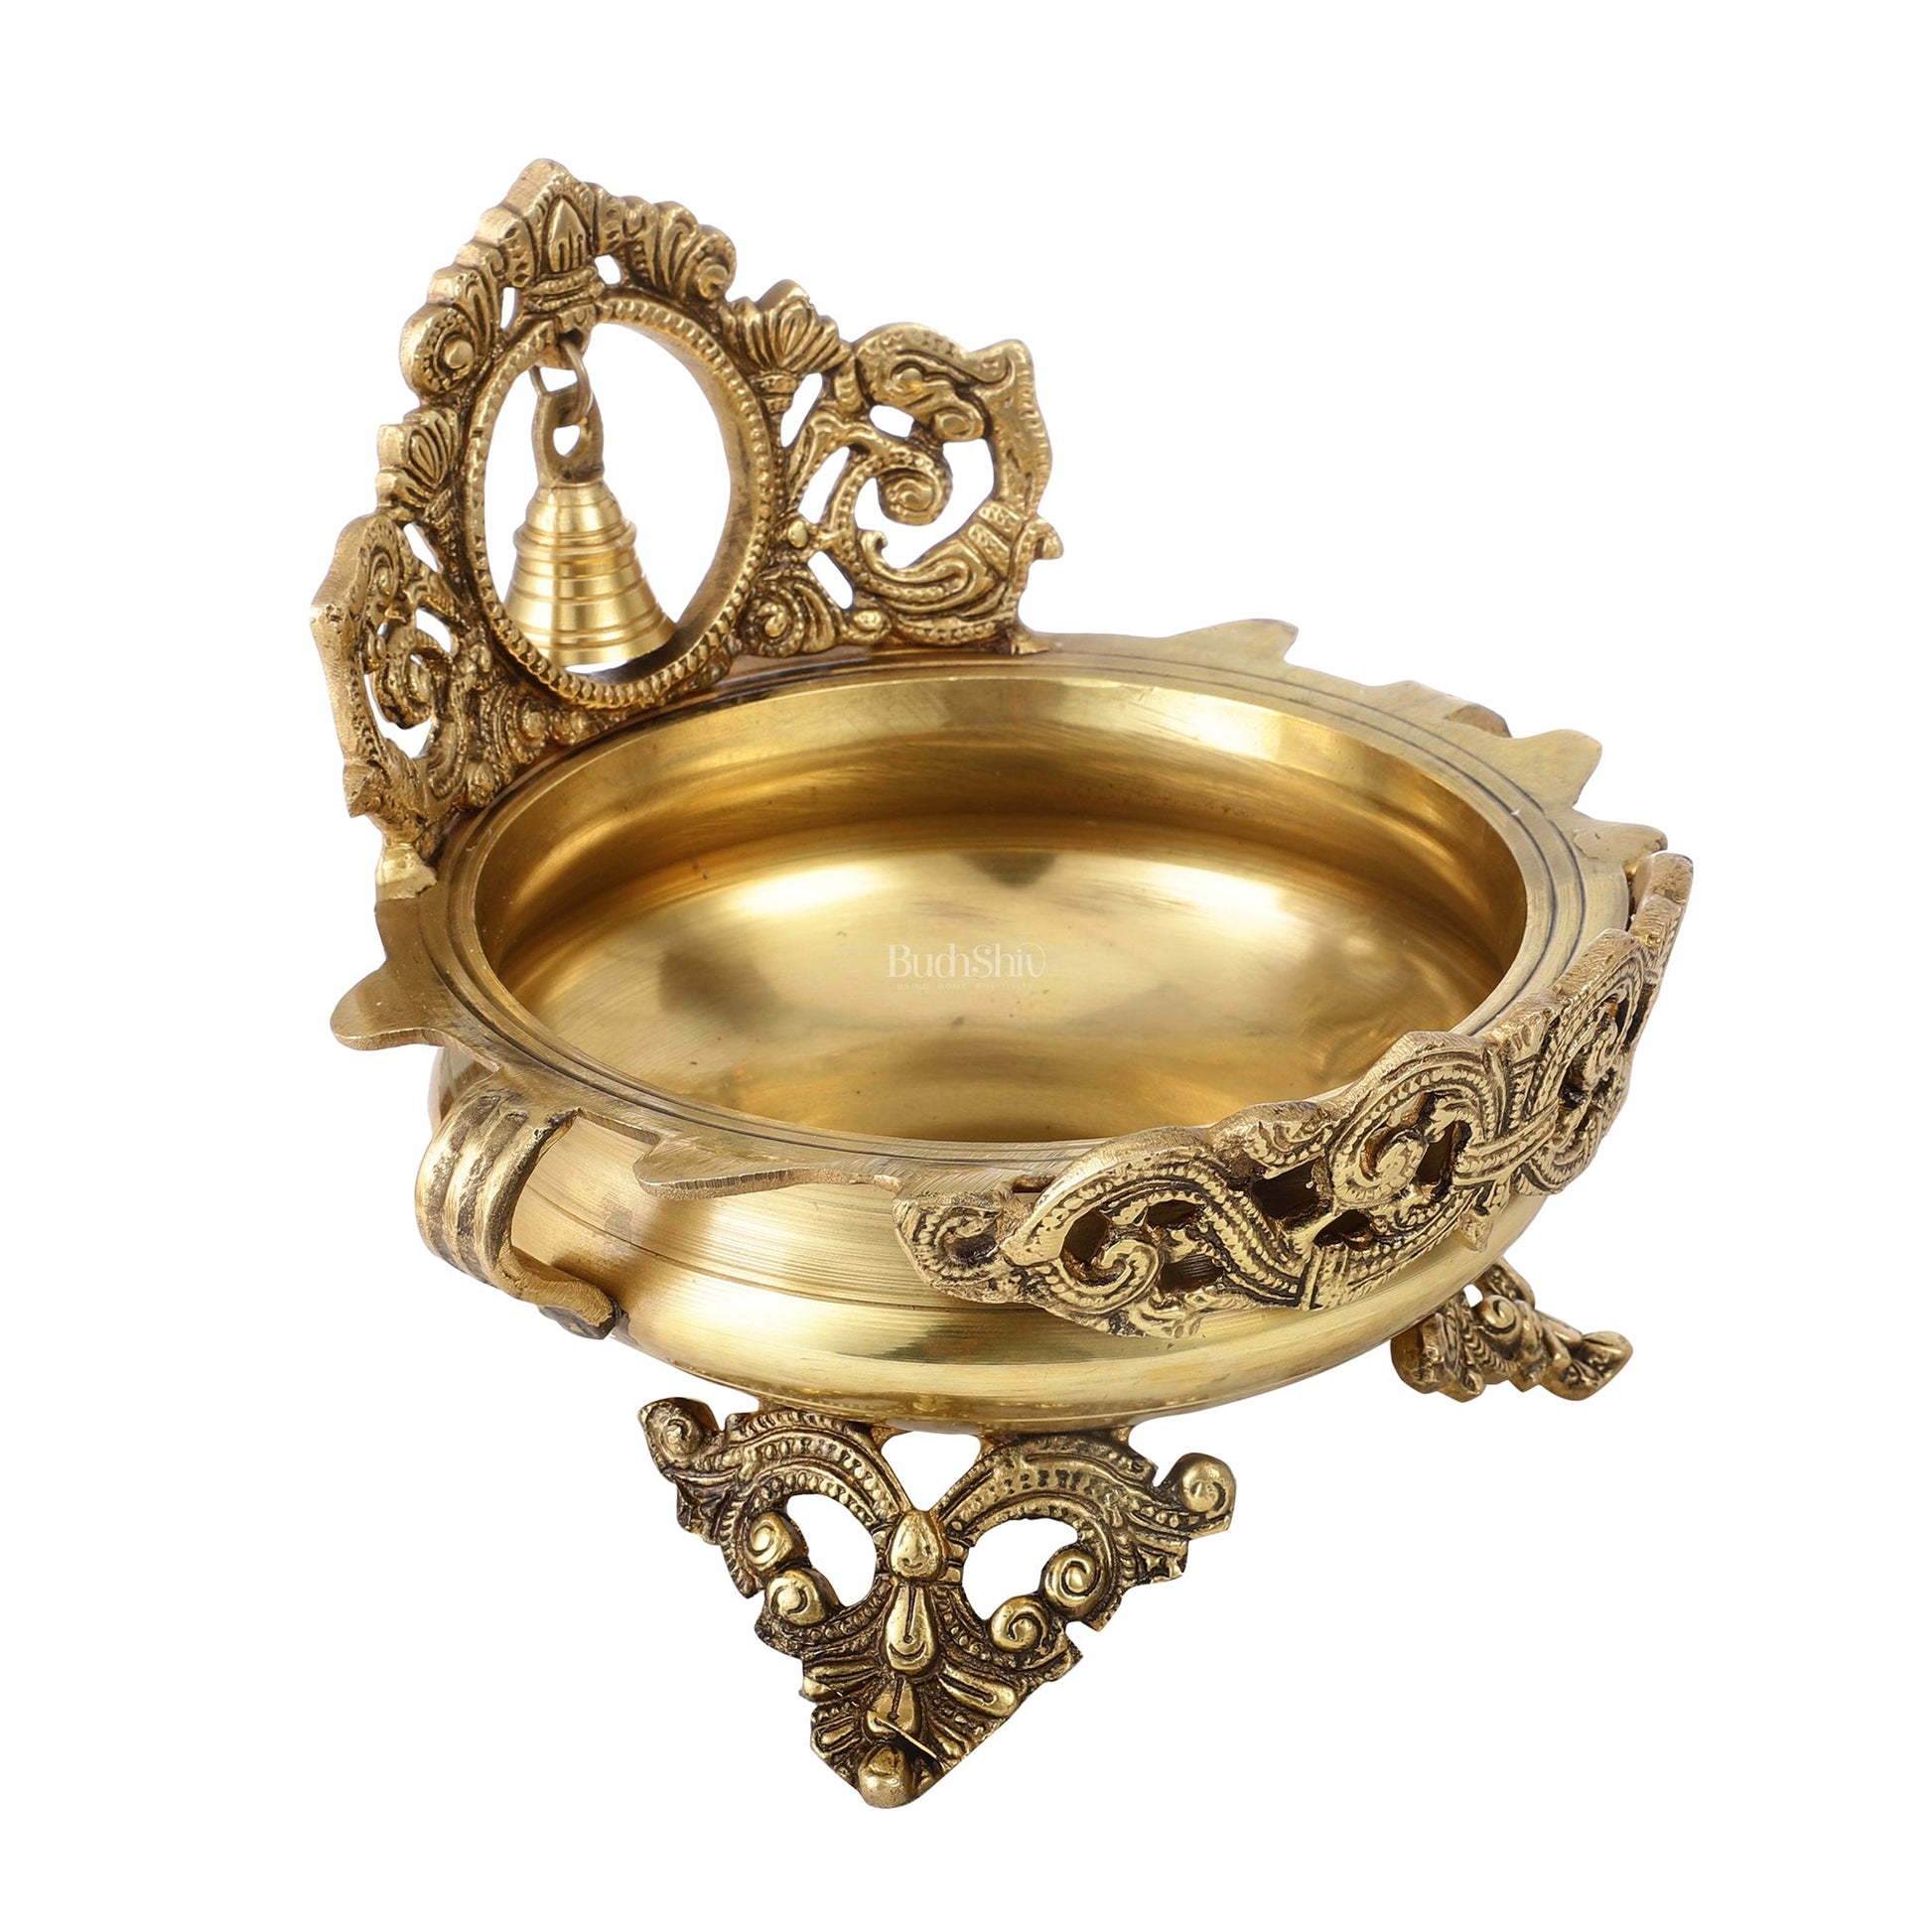 Brass Urli with bell 9.5 inch - Budhshiv.com